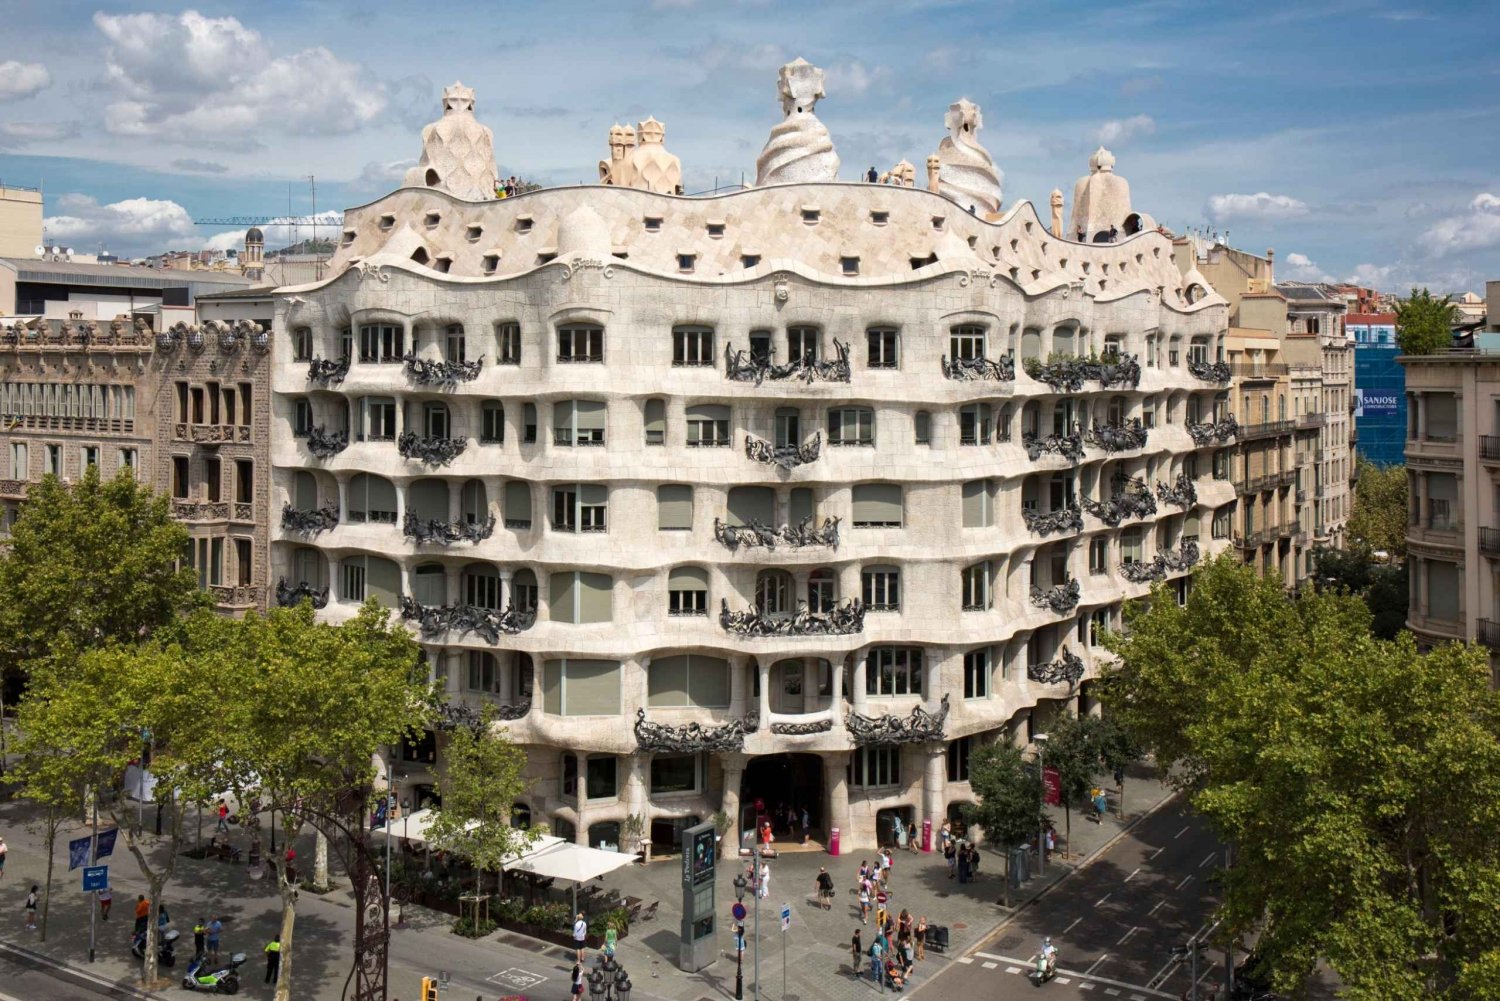 Barcelona: La Pedrera-Casa Milà Biljett & Audio Guide Alternativ